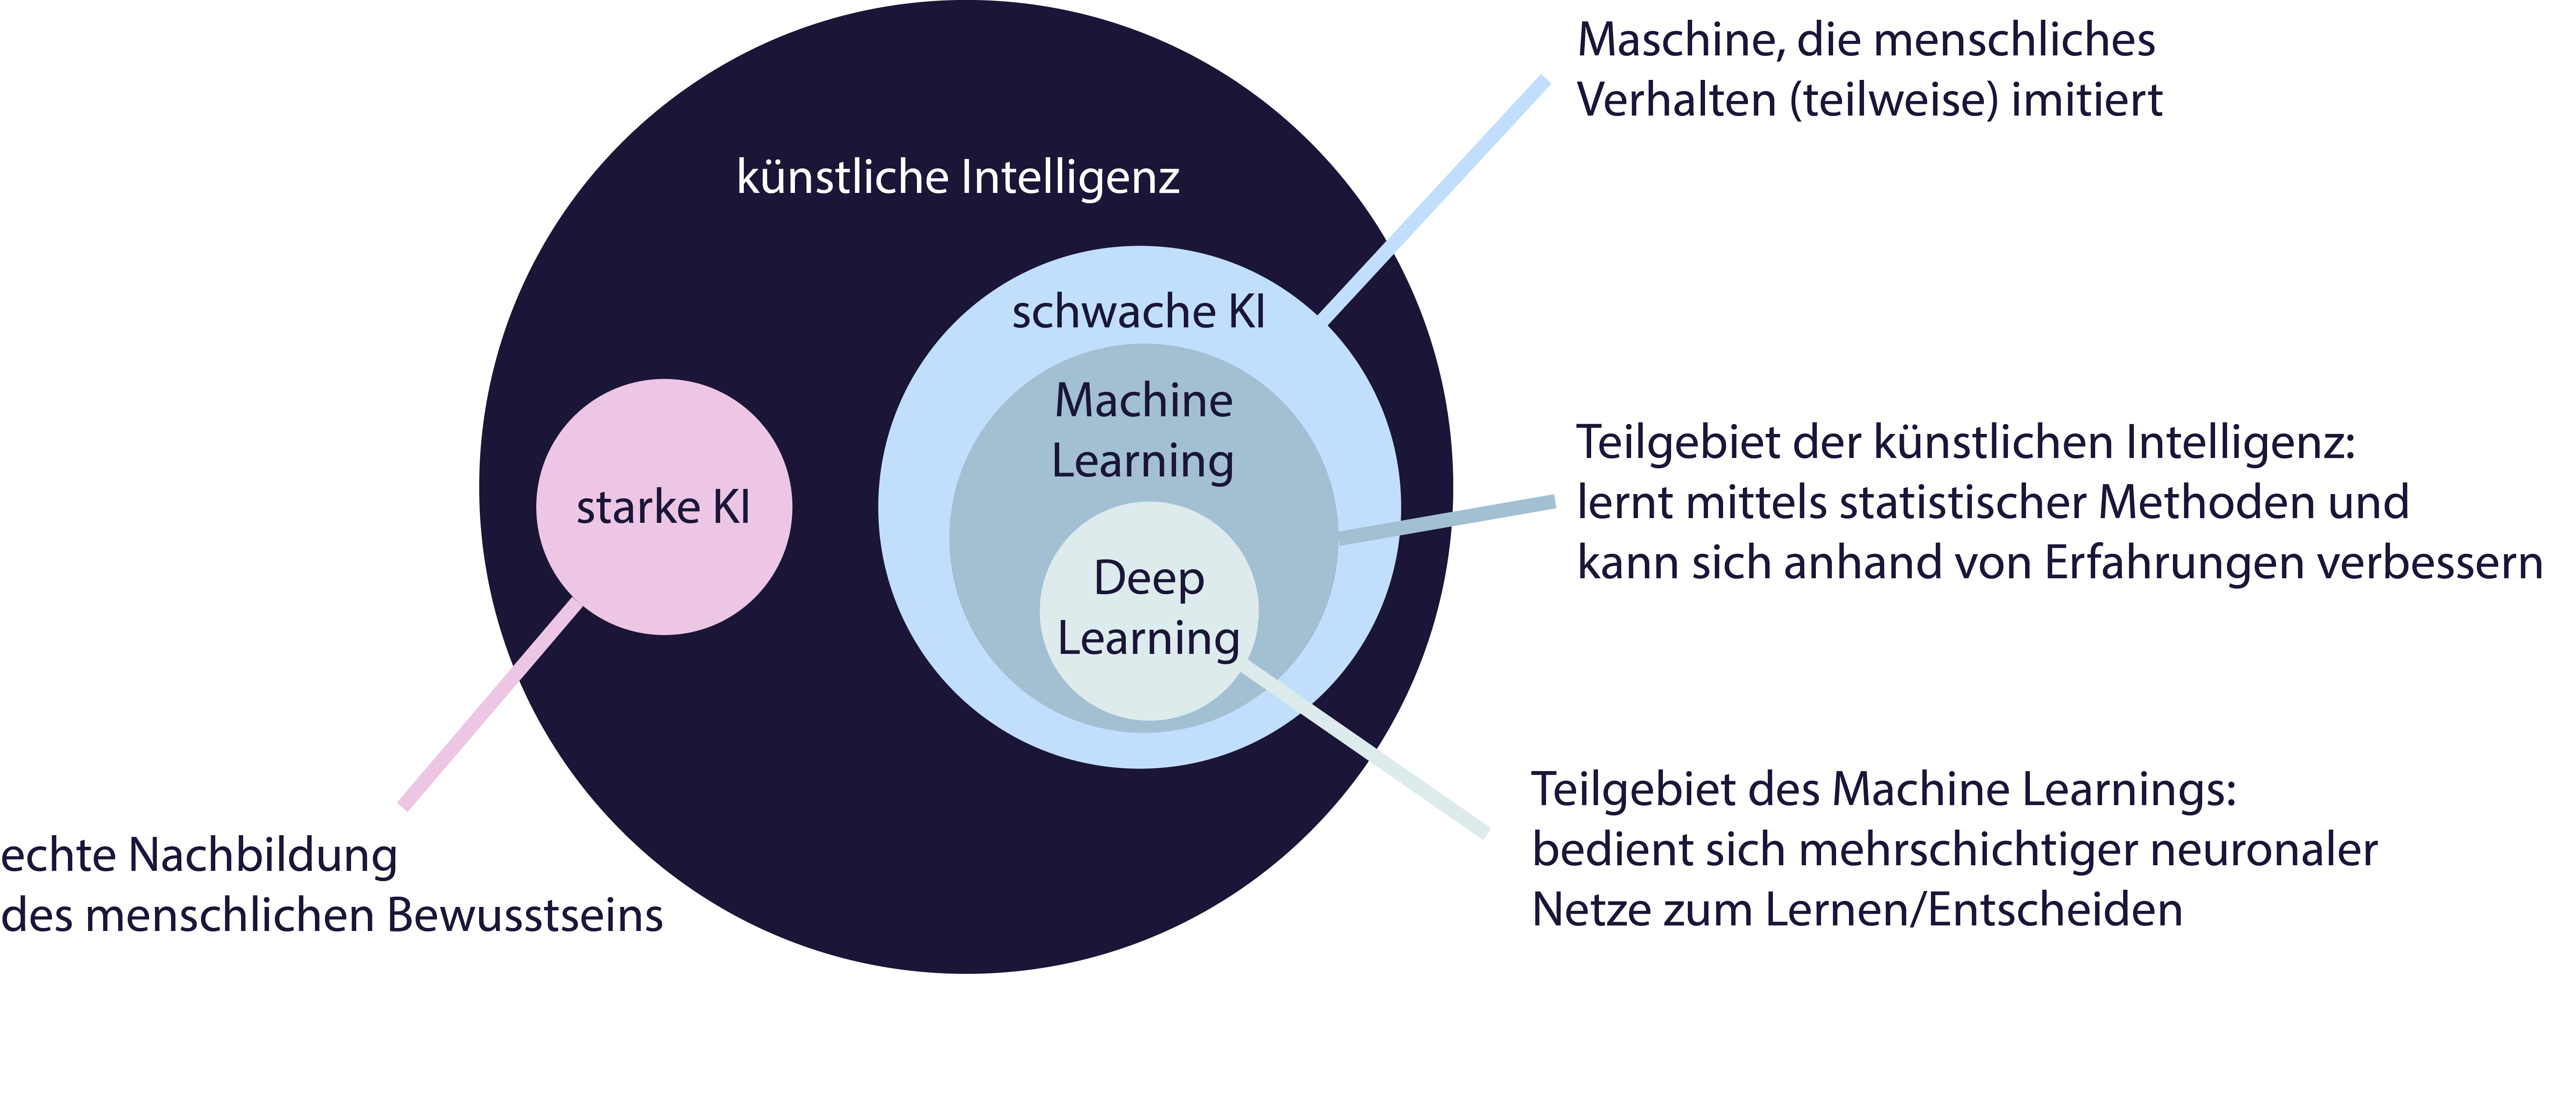 Übersicht der Schnitt- und Teilmengen von Künstlicher Intelligenz, Maschine Learning und Deep Learning.